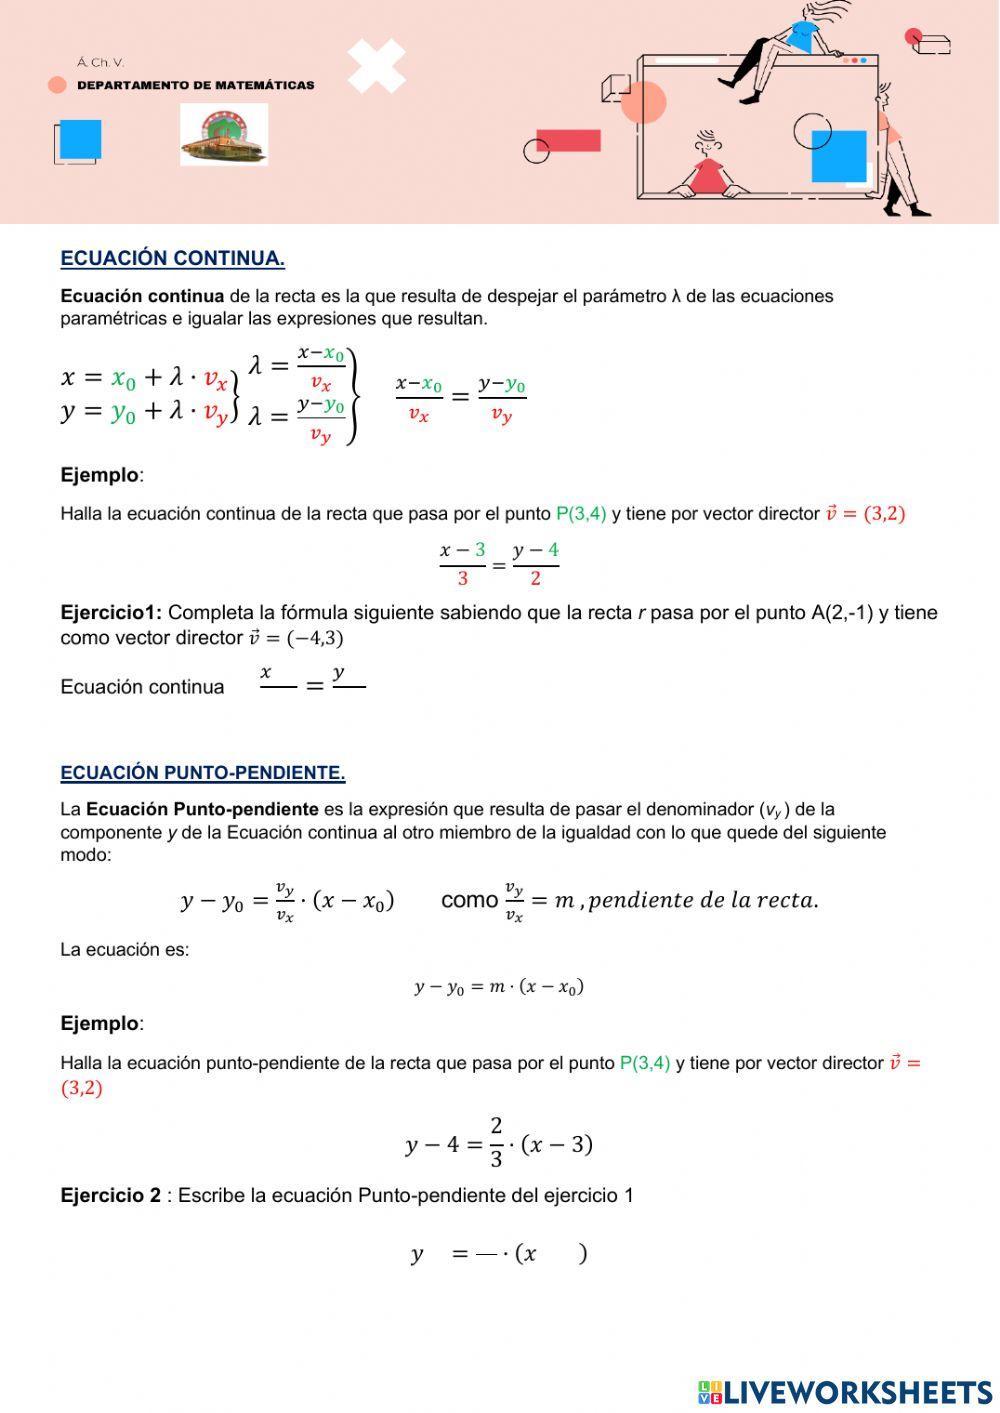 Ecuaciones de la recta continua y punto-pendiente